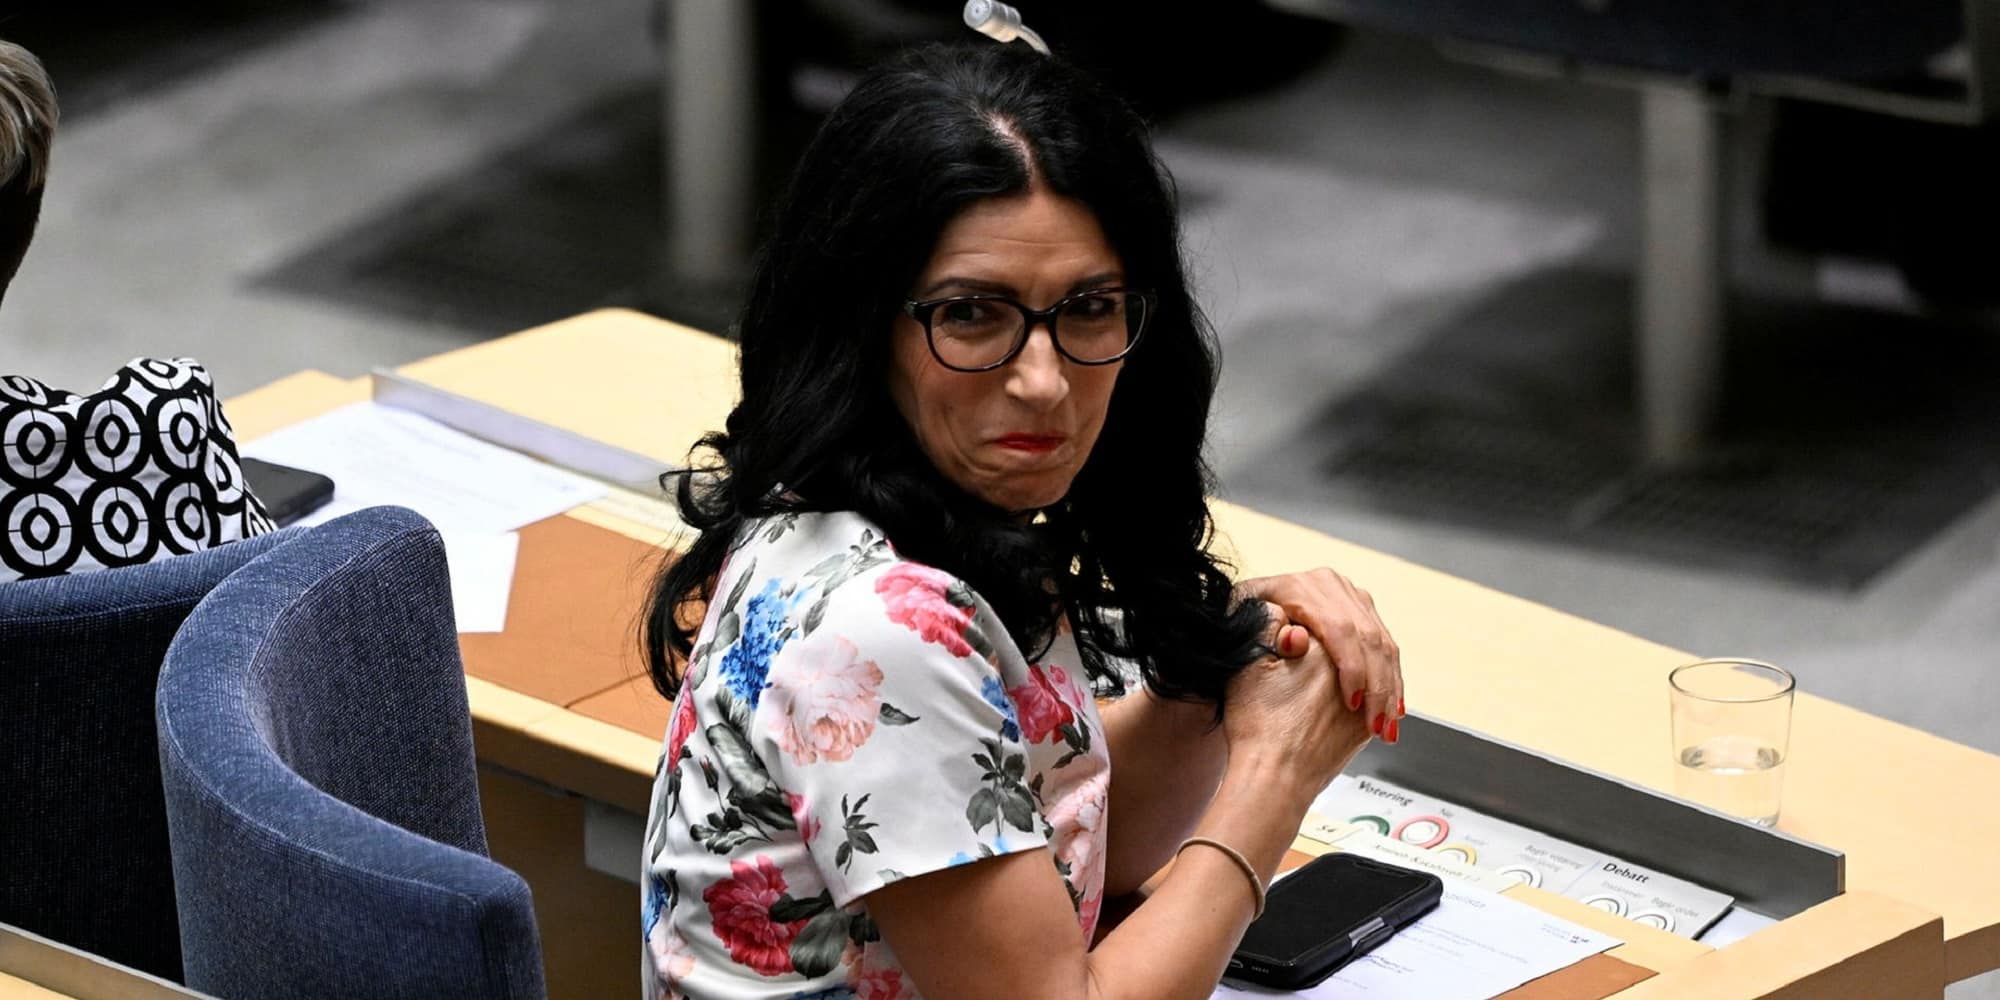 Η Αμινέ Κακεμπάβε, πολιτικός της κουρδικής μειονότητας στη Σουηδία